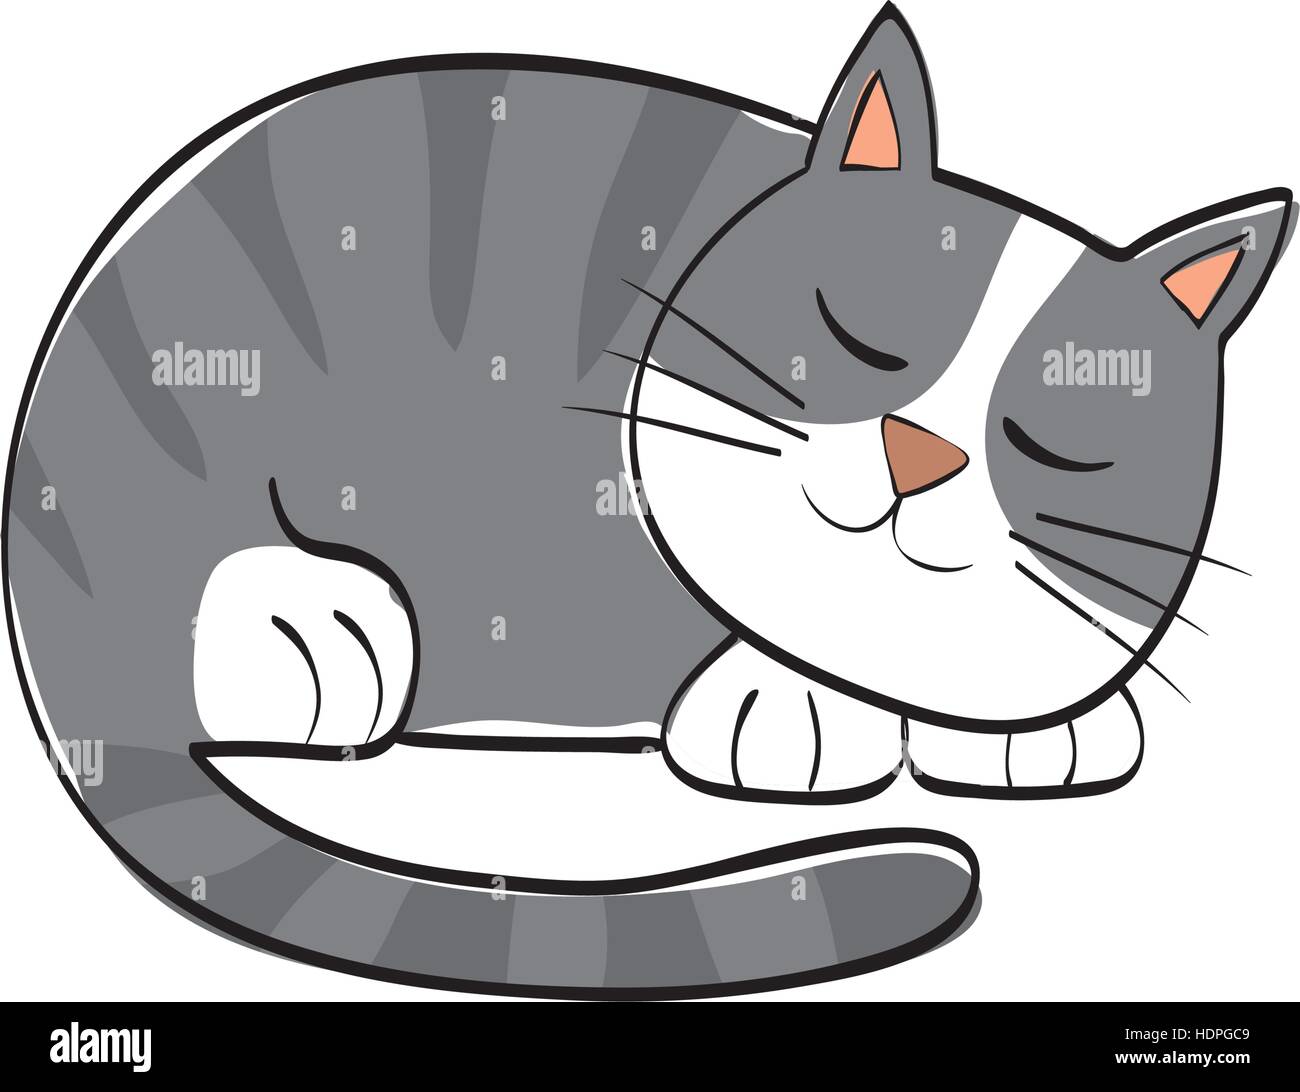 Cute cat cartoon Stock Vector Image & Art - Alamy